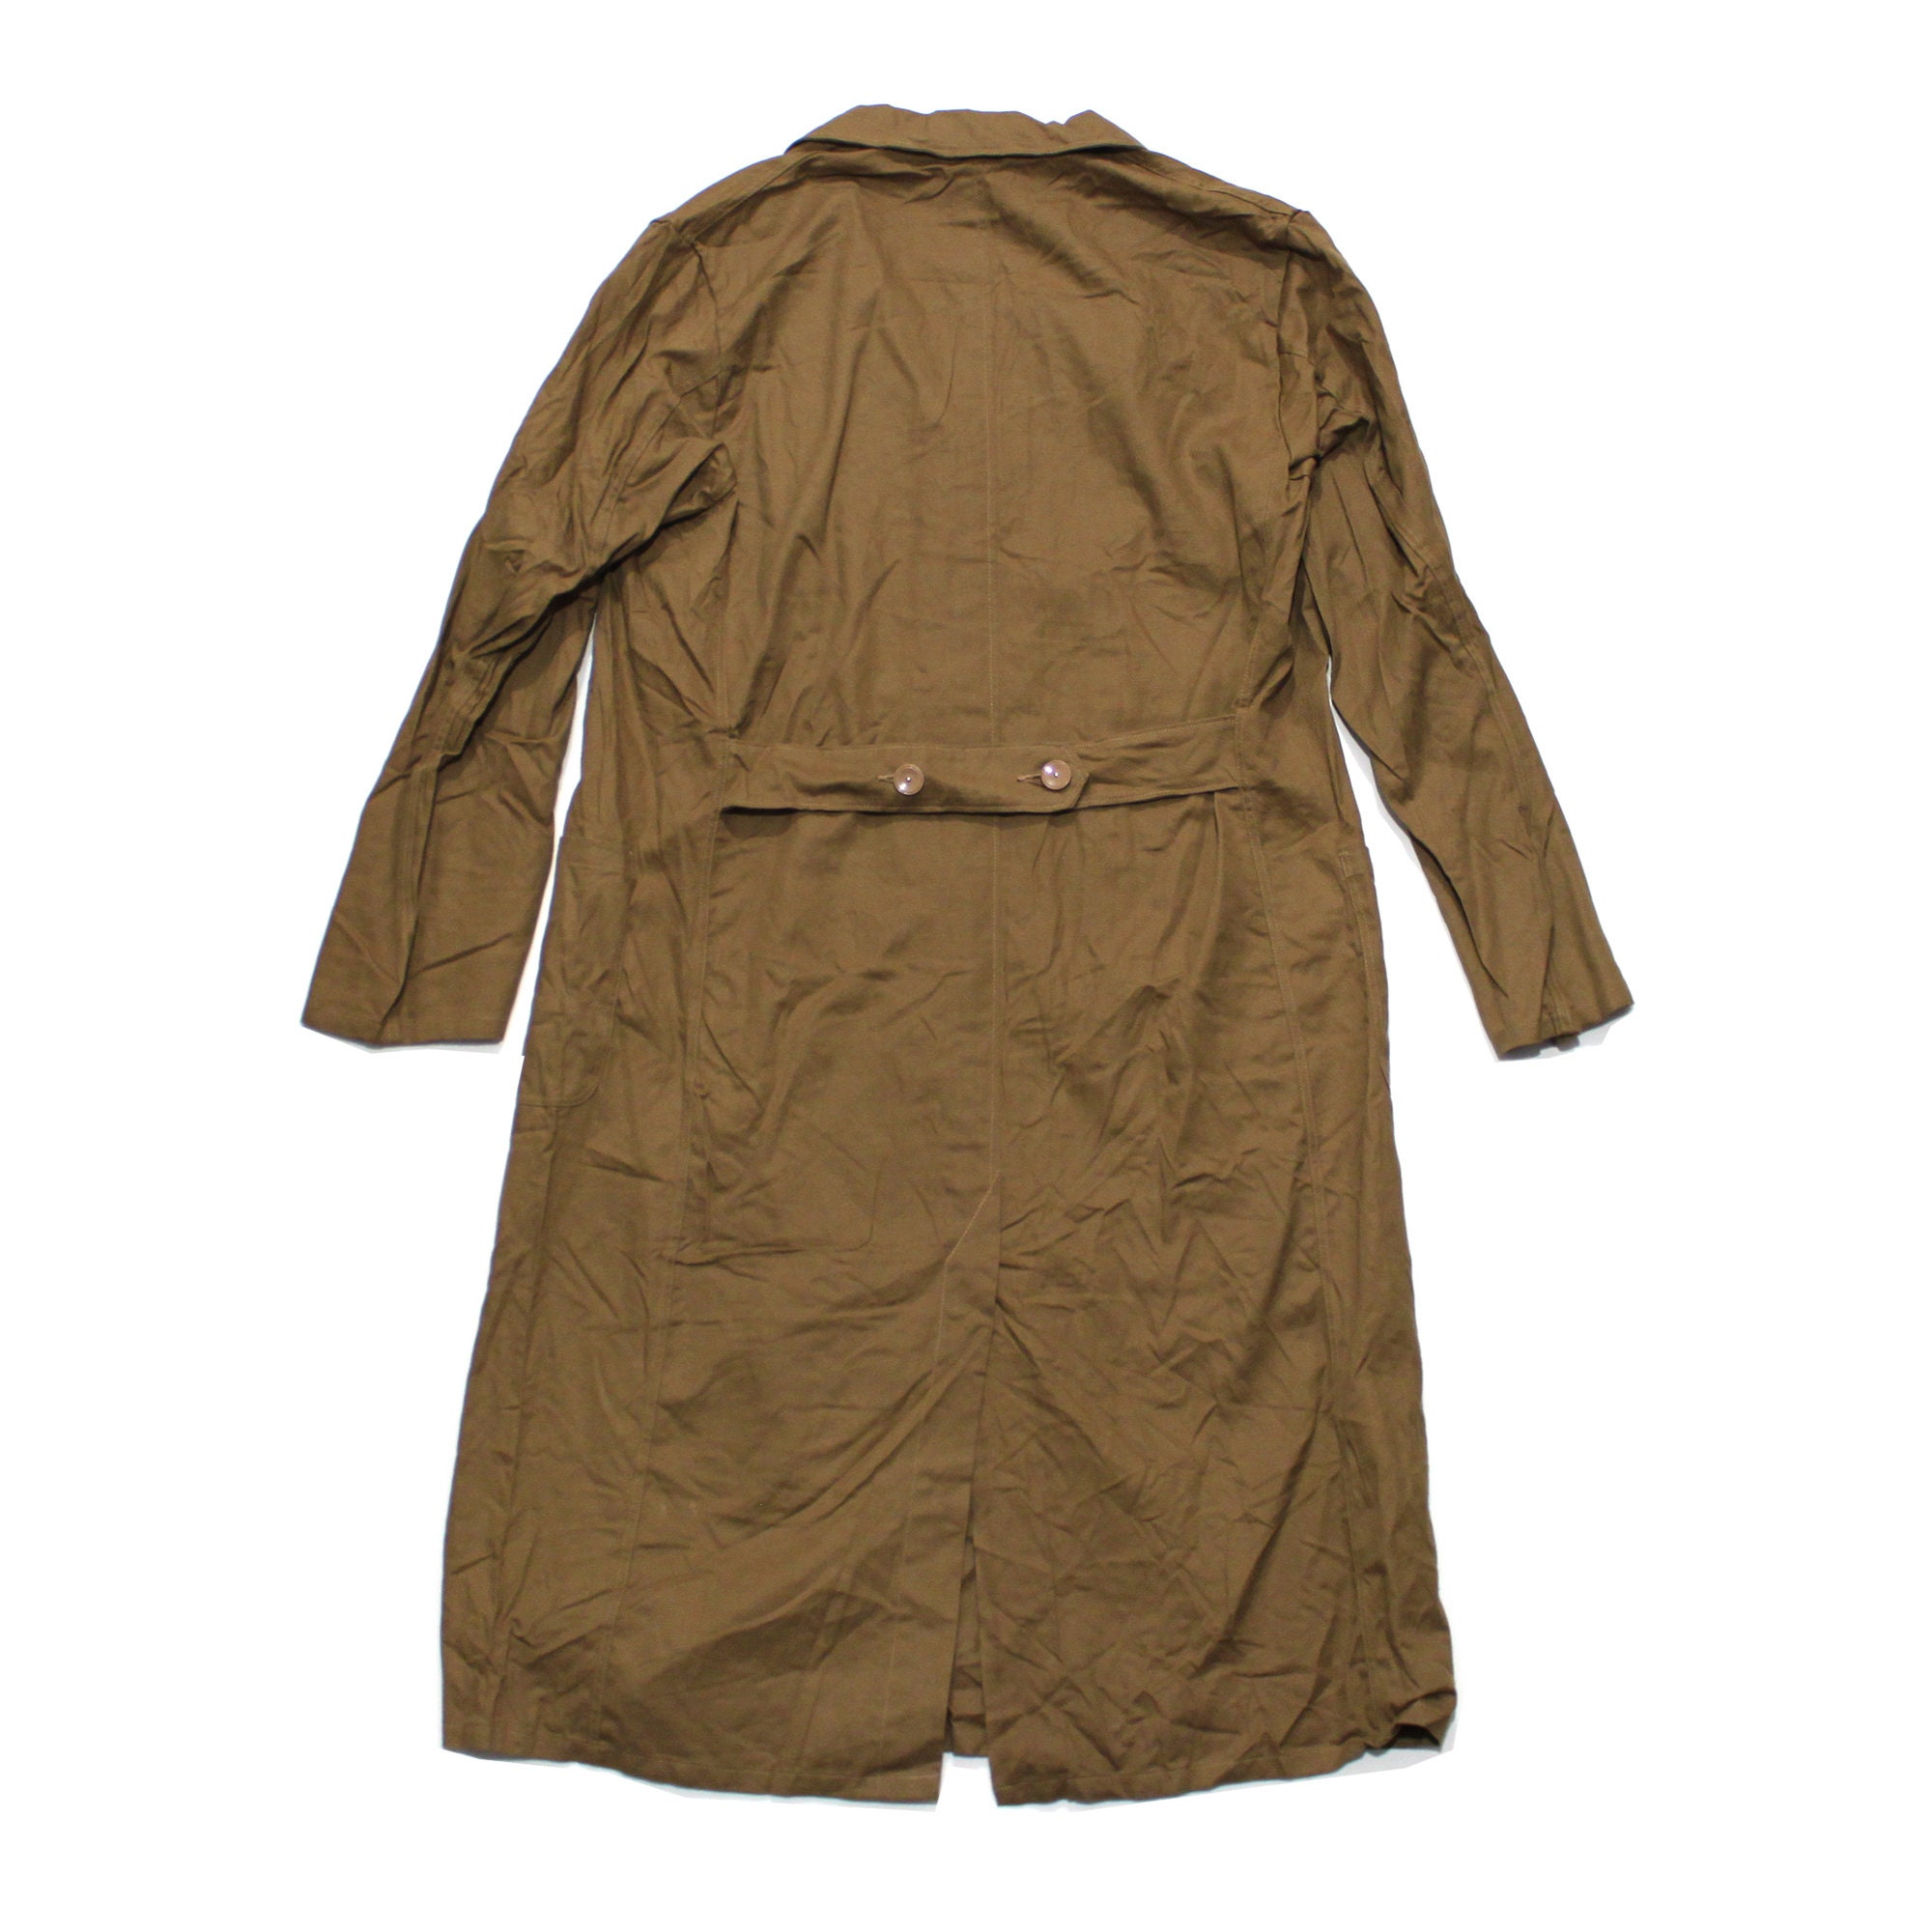 Berufs-mantel Indanthren Vintage Germany Shopcoat Workwear - Etsy UK